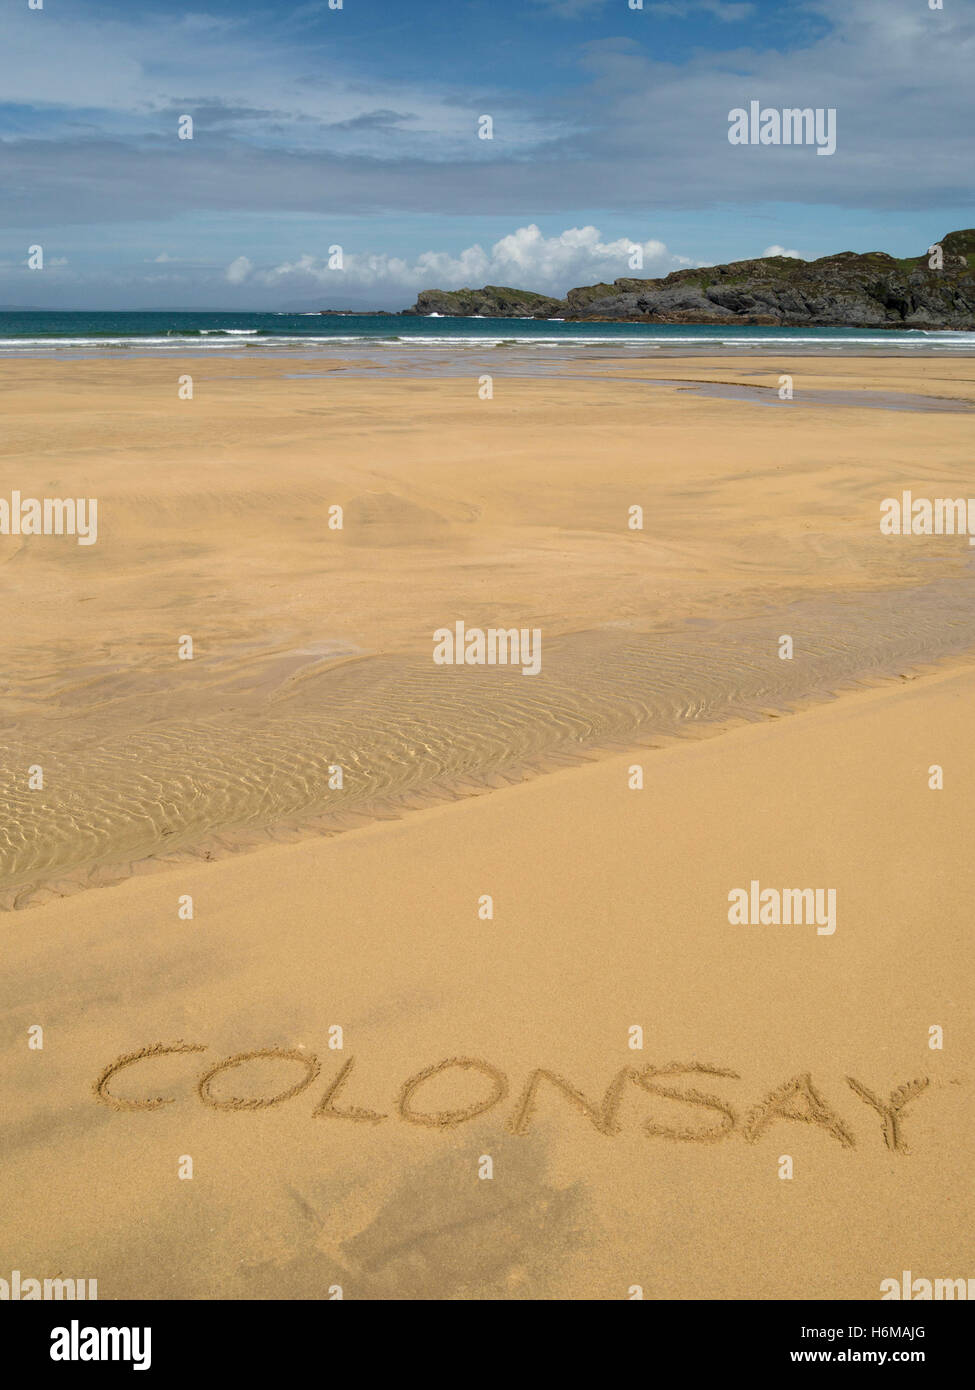 Le mot 'Colonsay' écrit en sable doré de la plage de la baie de Kiloran sur l'île de Colonsay, Ecosse, Royaume-Uni. Banque D'Images